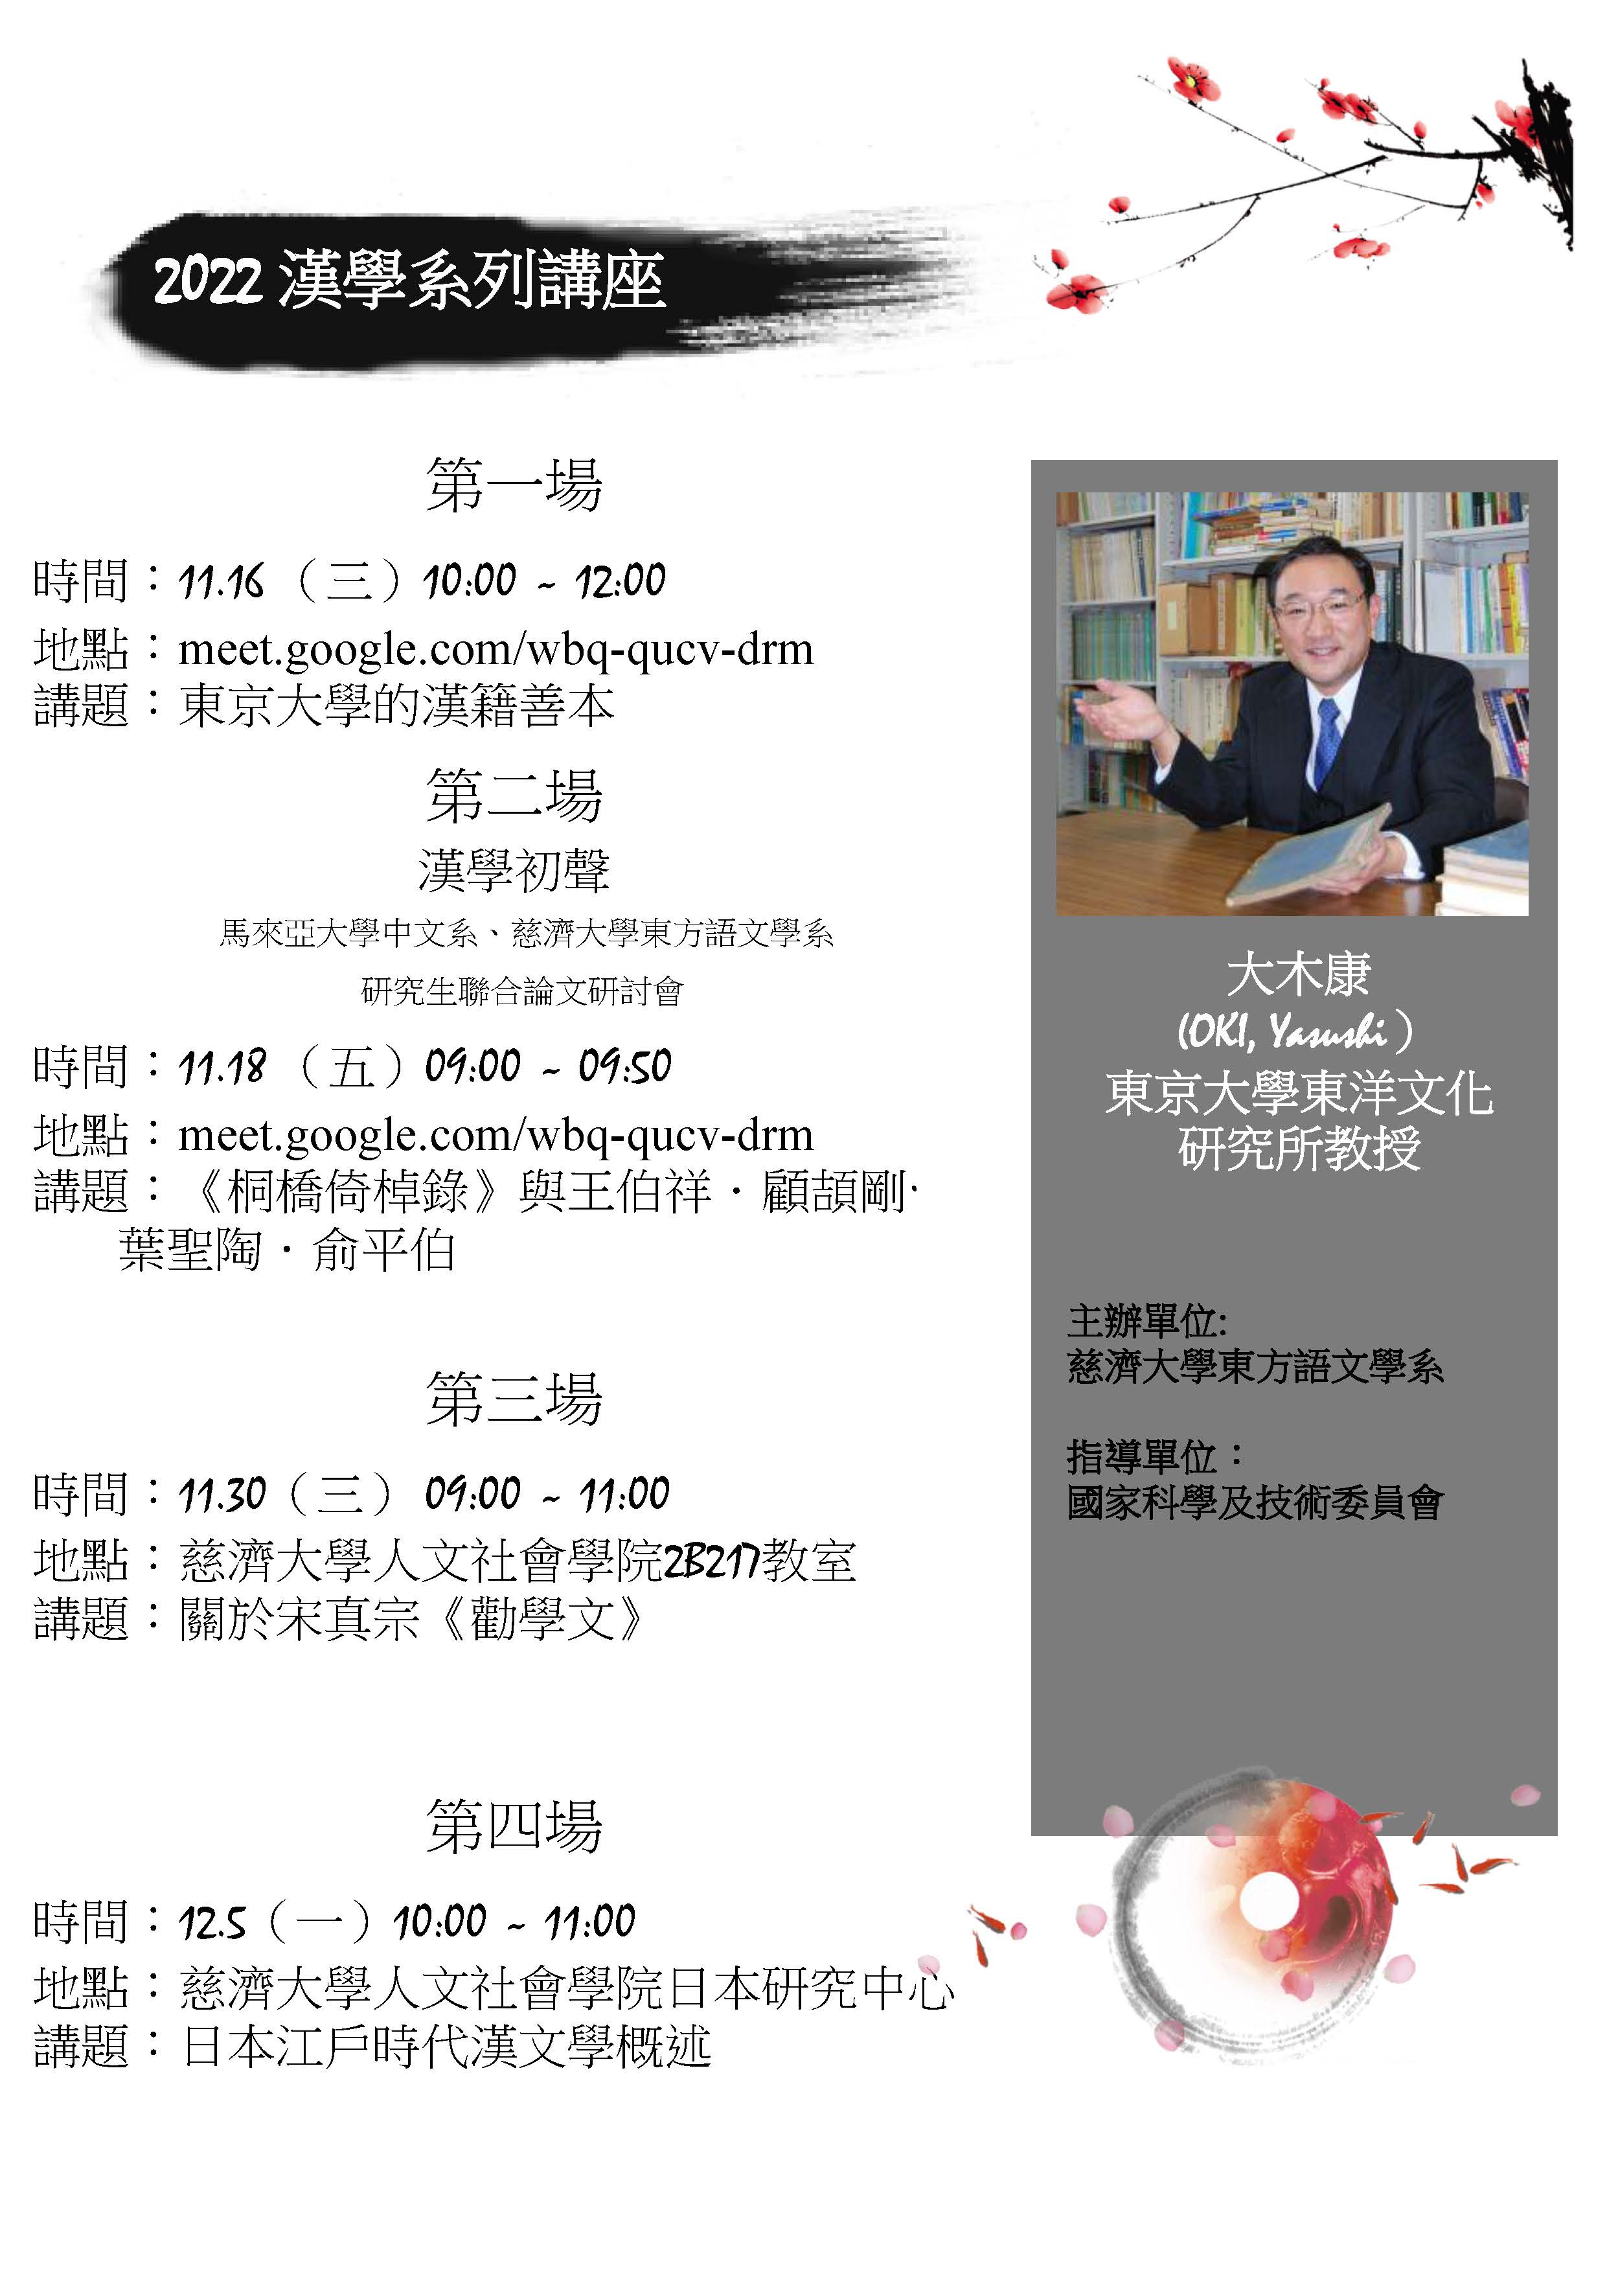 大木康教授訪臺公開演講